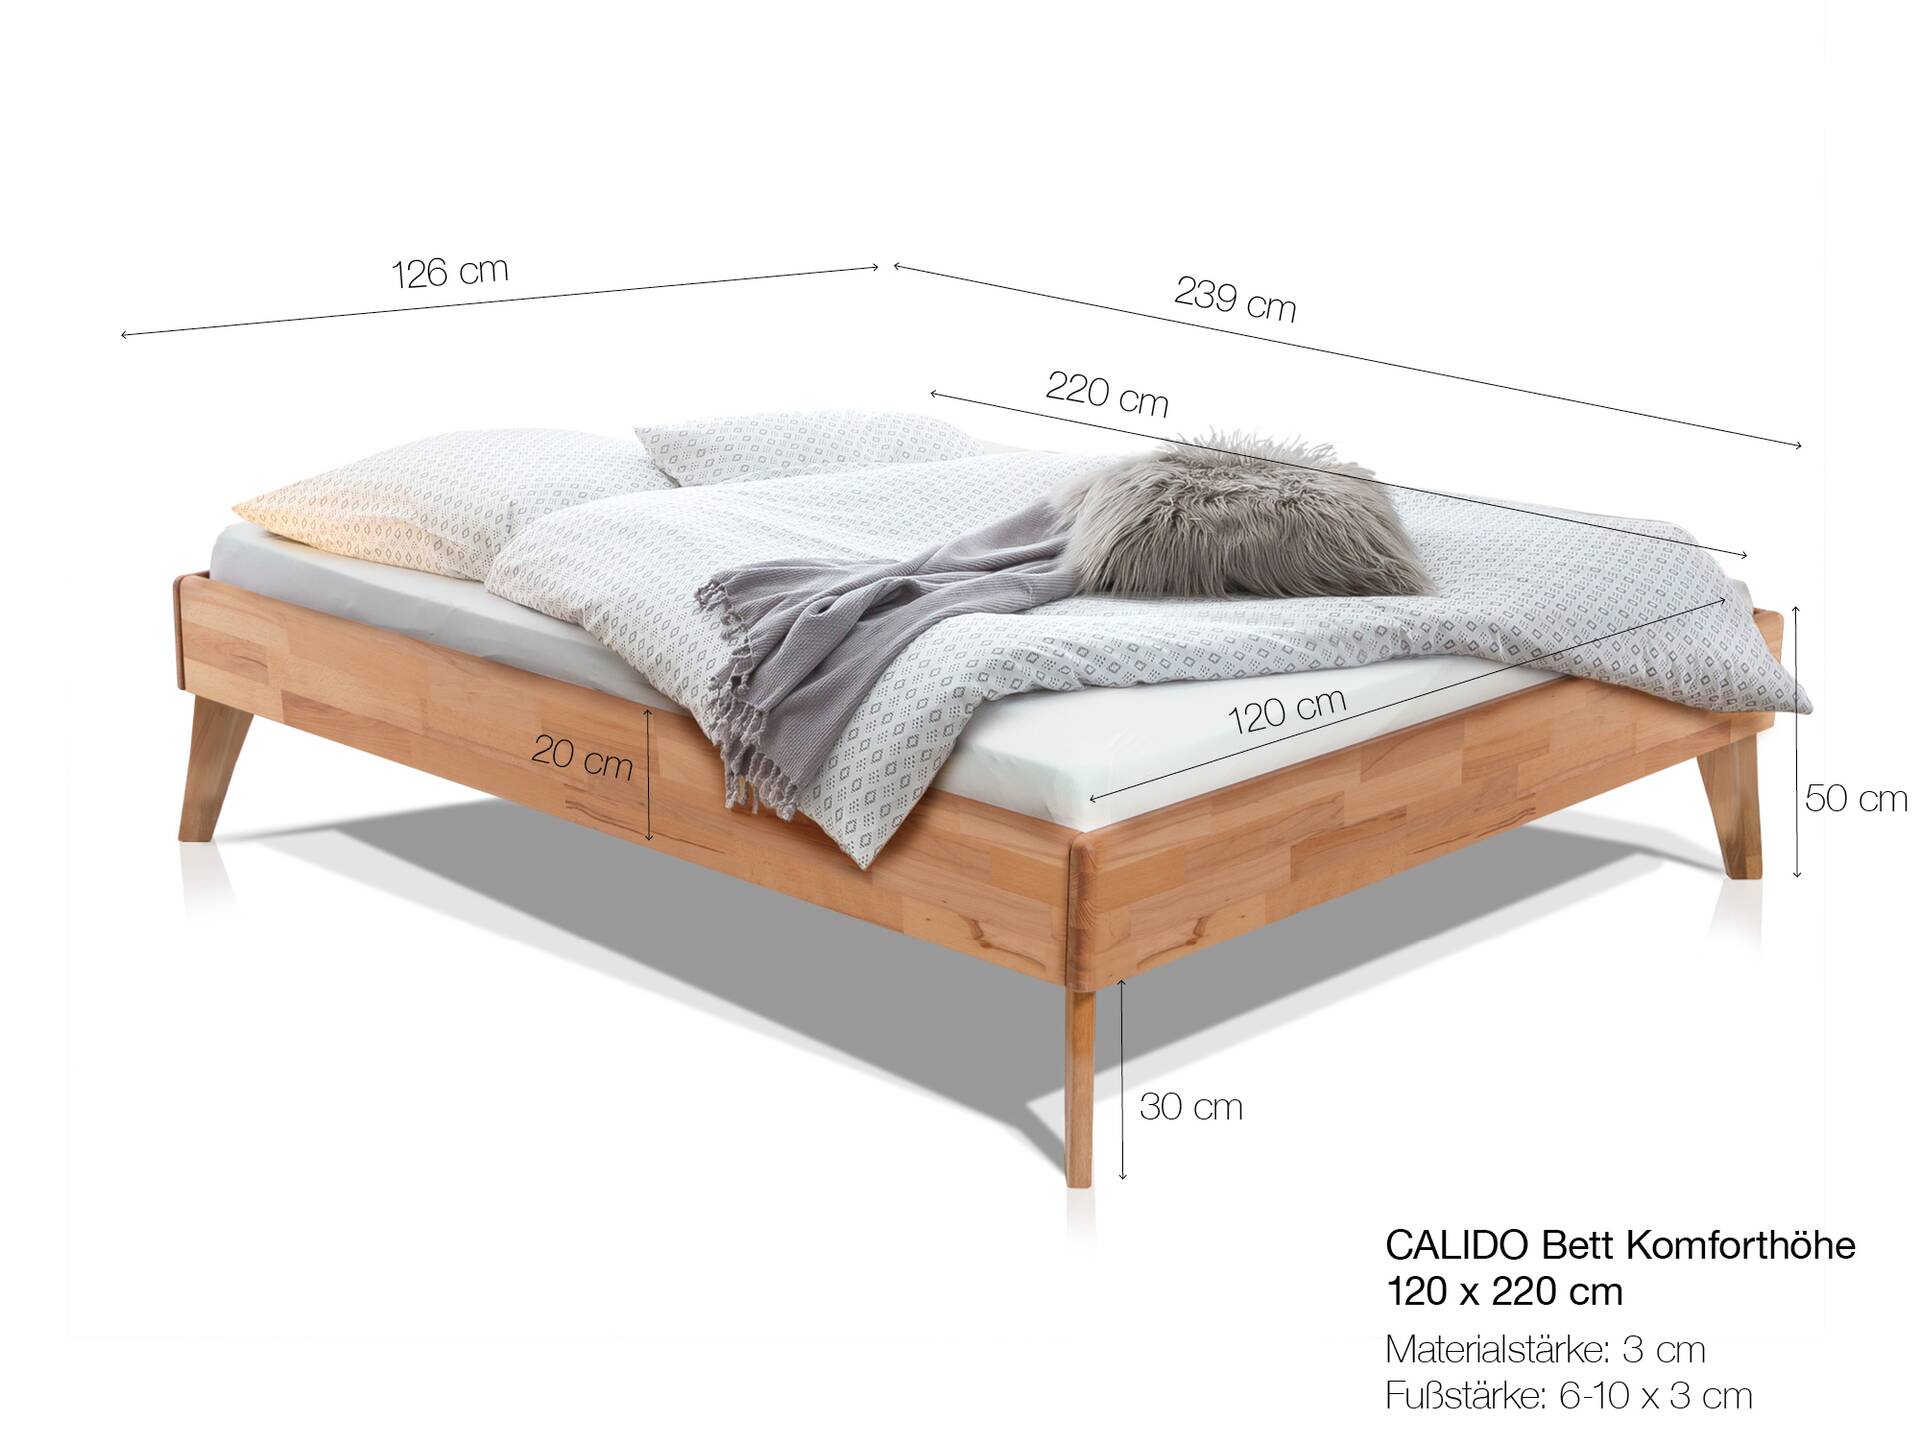 CALIDO 4-Fuß-Bett ohne Kopfteil, Material Massivholz 120 x 220 cm | Eiche geölt | Komforthöhe